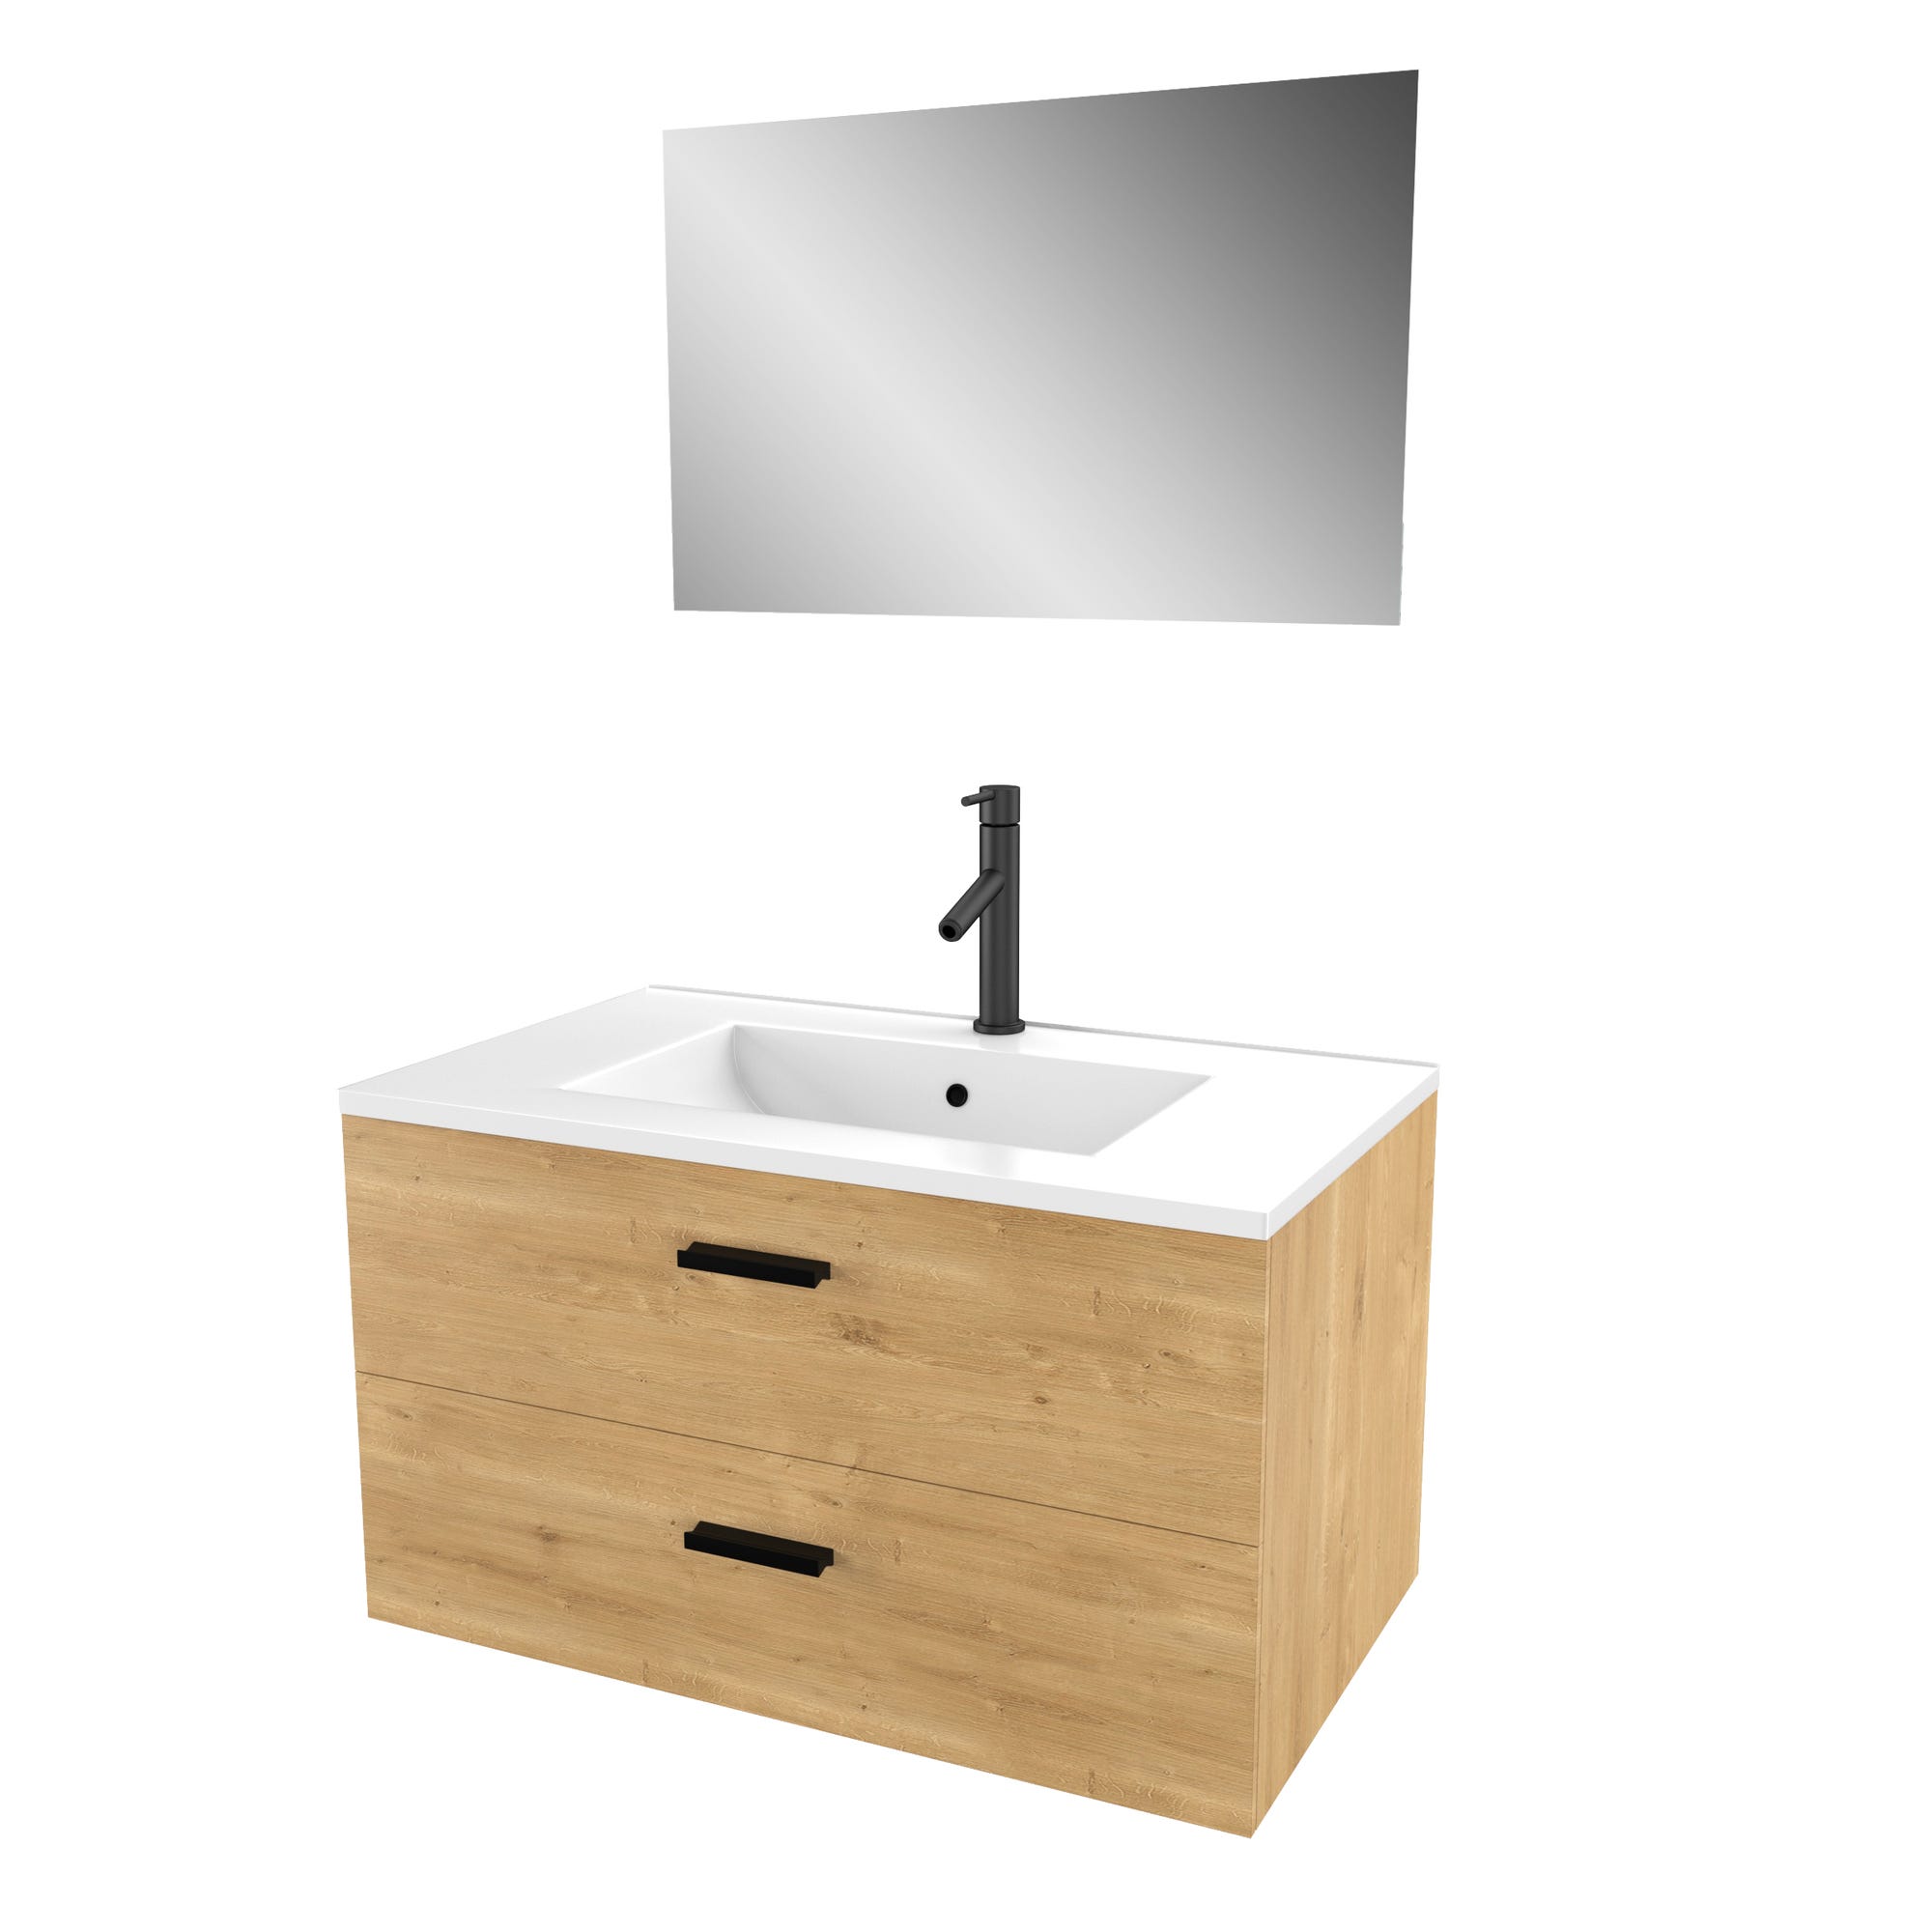 Meuble salle de bain 80 cm monte suspendu decor bois H46xL80xP45cm - avec tiroirs - vasque et miroir 2